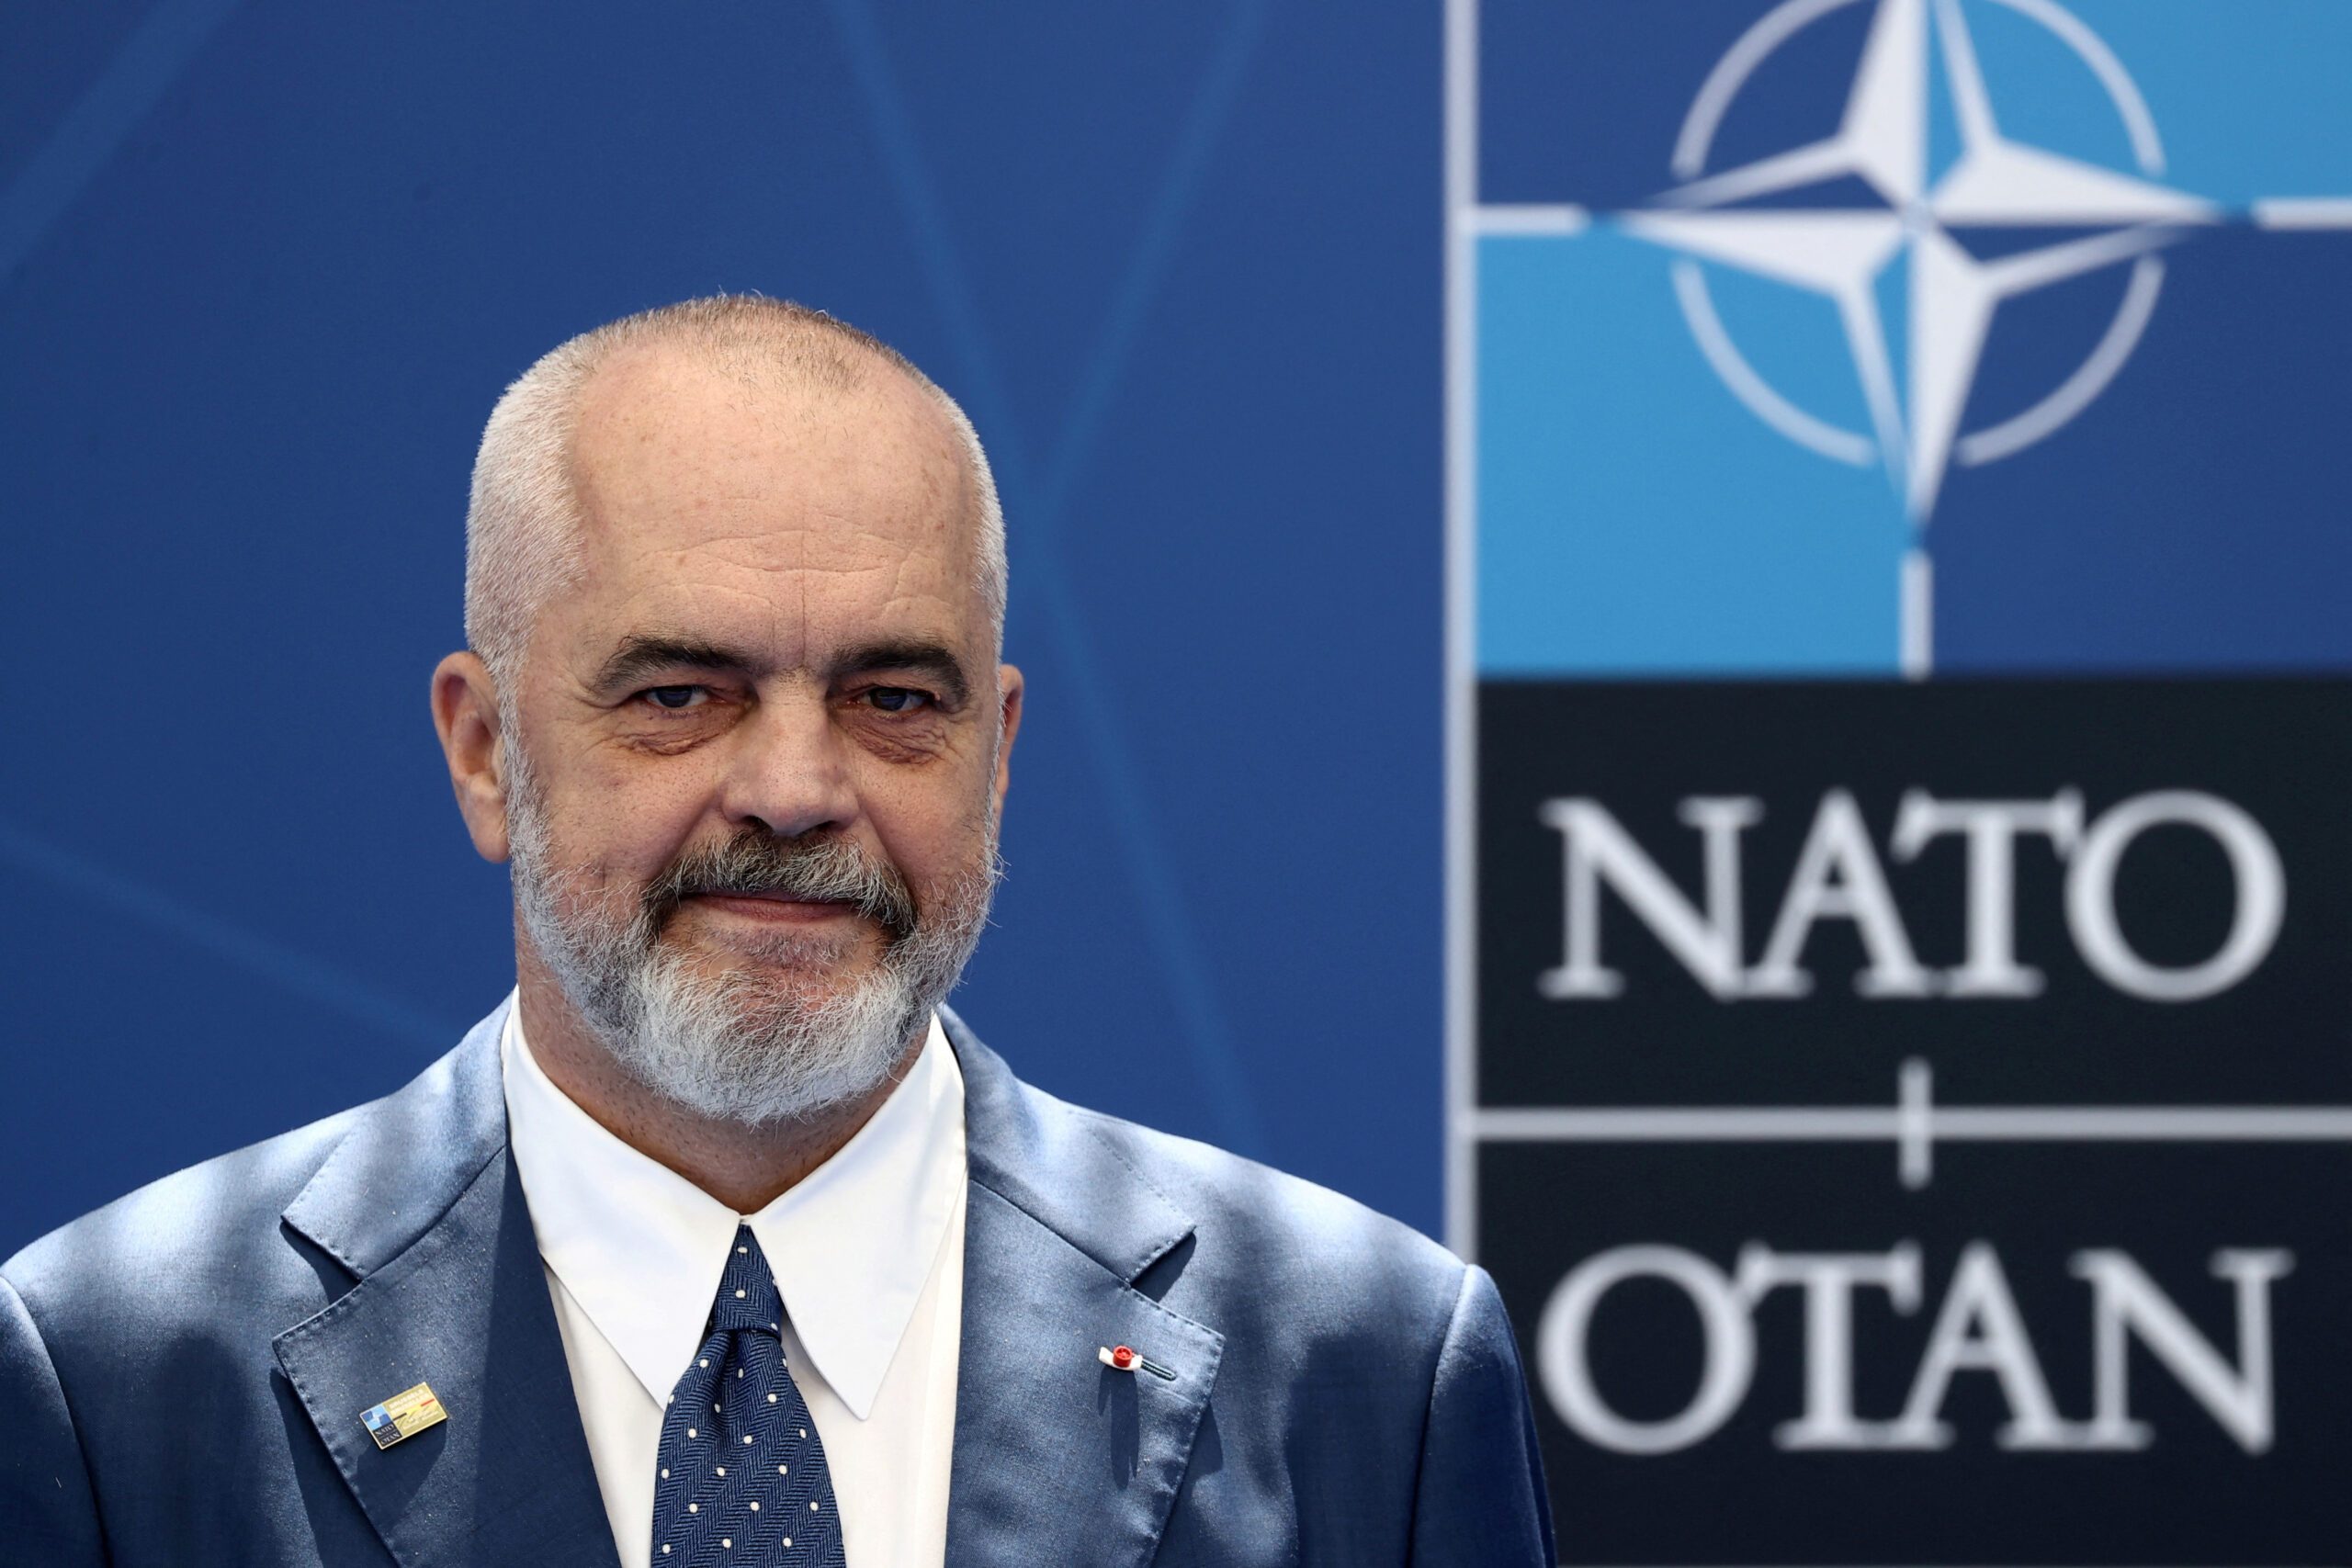 La OTAN en conversaciones para construir una base naval en Albania, dice primer ministro